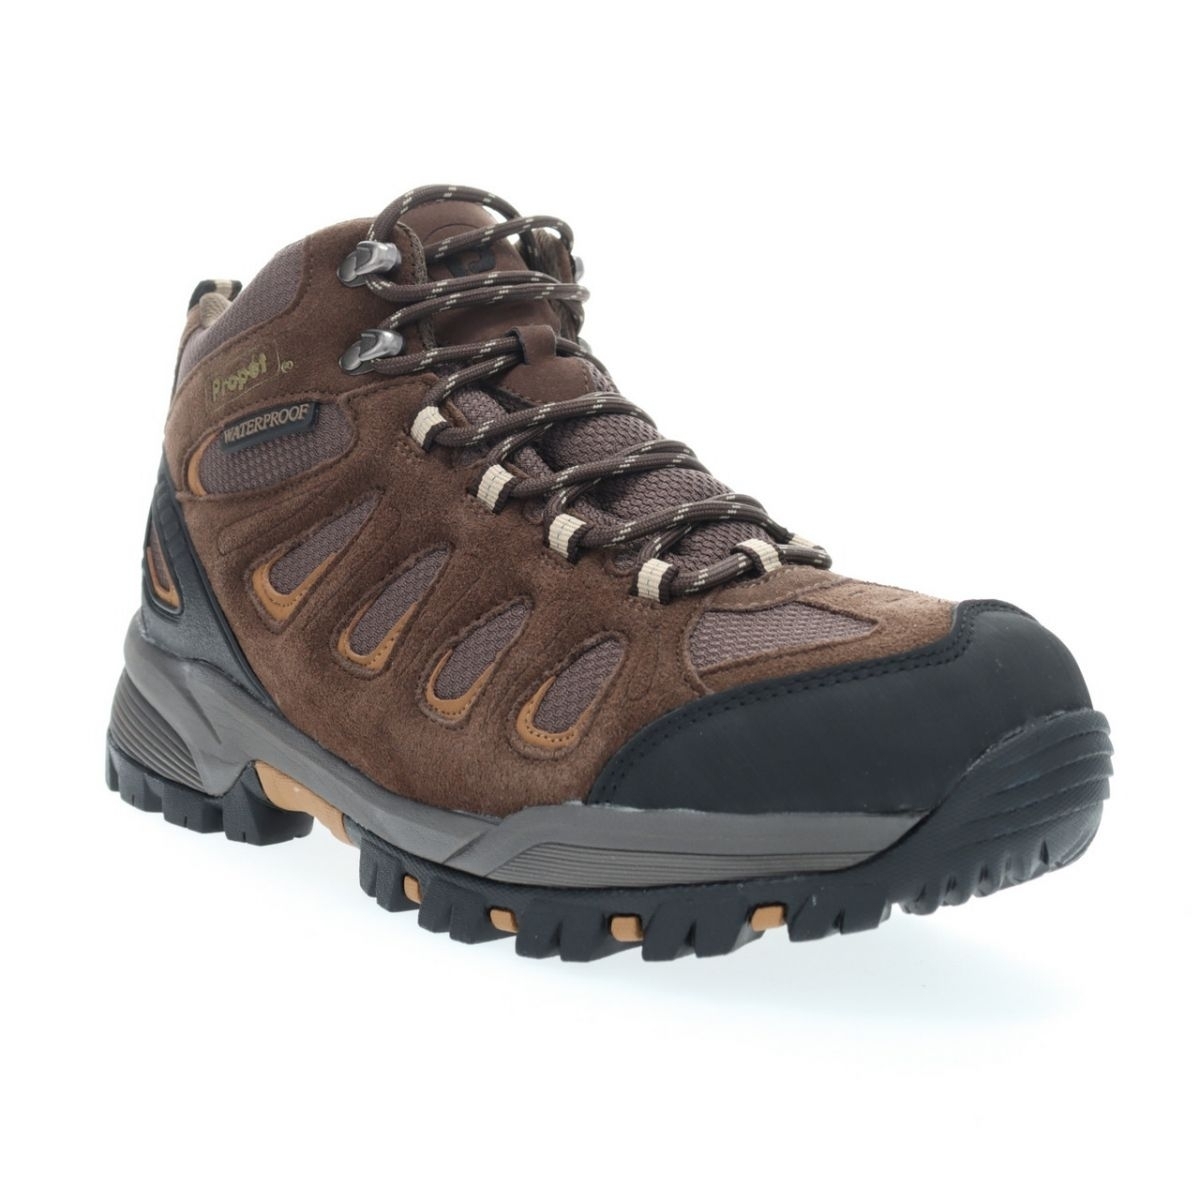 Propet Men's Ridge Walker Hiking Boot Brown - M3599BR 8 XX US Men BROWN - BROWN, 9